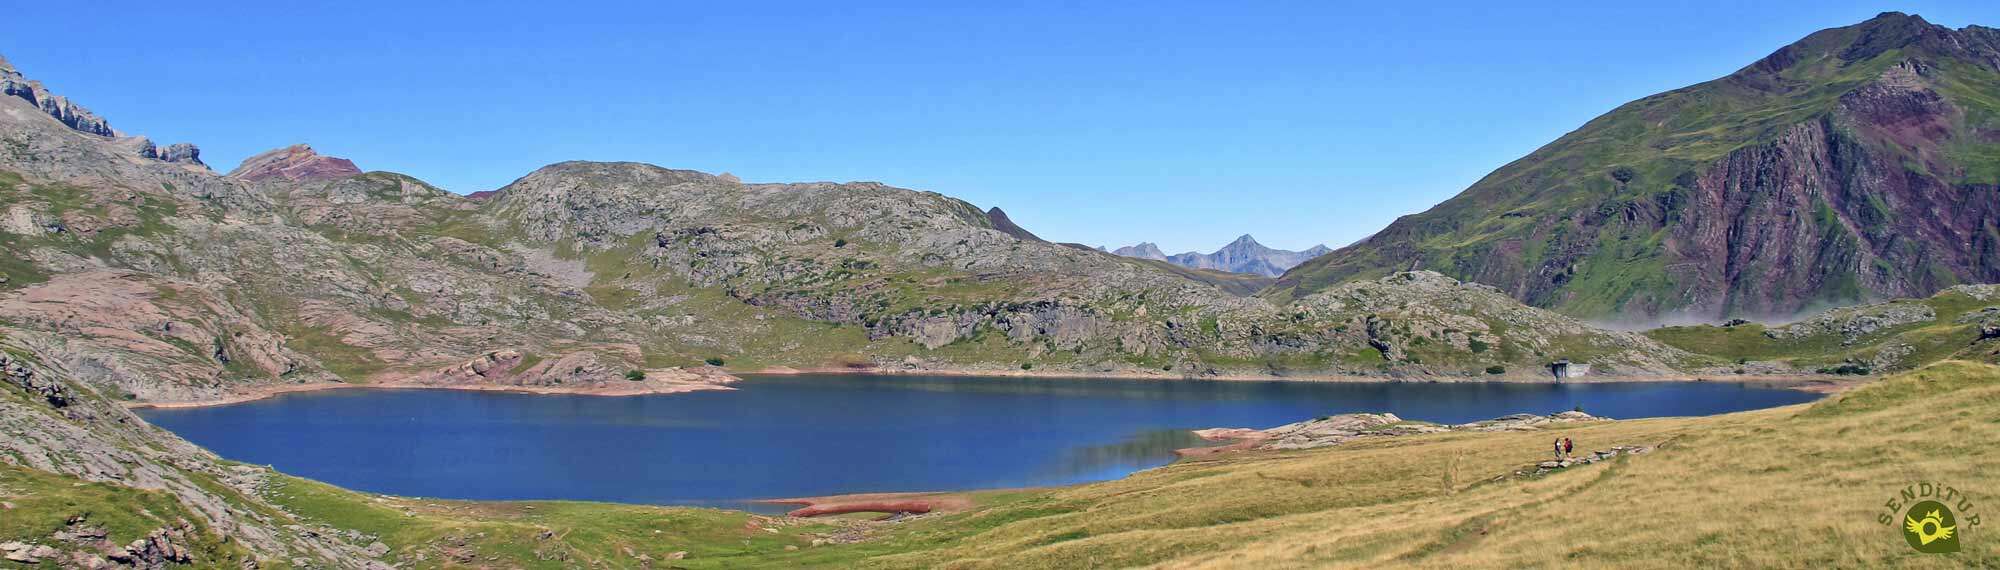 Pyrenean lake of Estanés from Sansanet